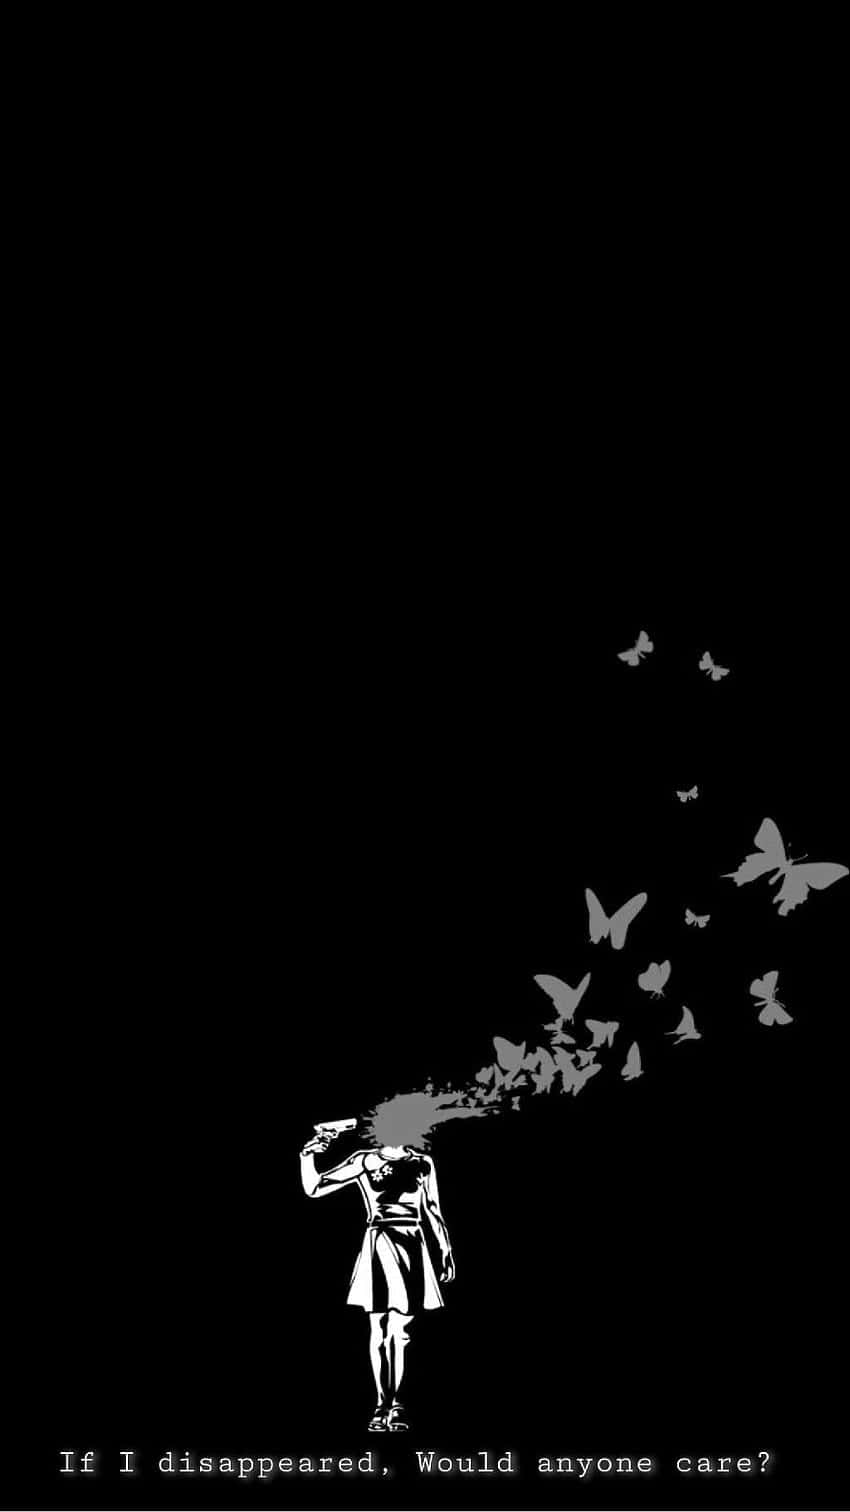 Unaimagen En Blanco Y Negro De Una Persona Con Pájaros Volando Alrededor Fondo de pantalla